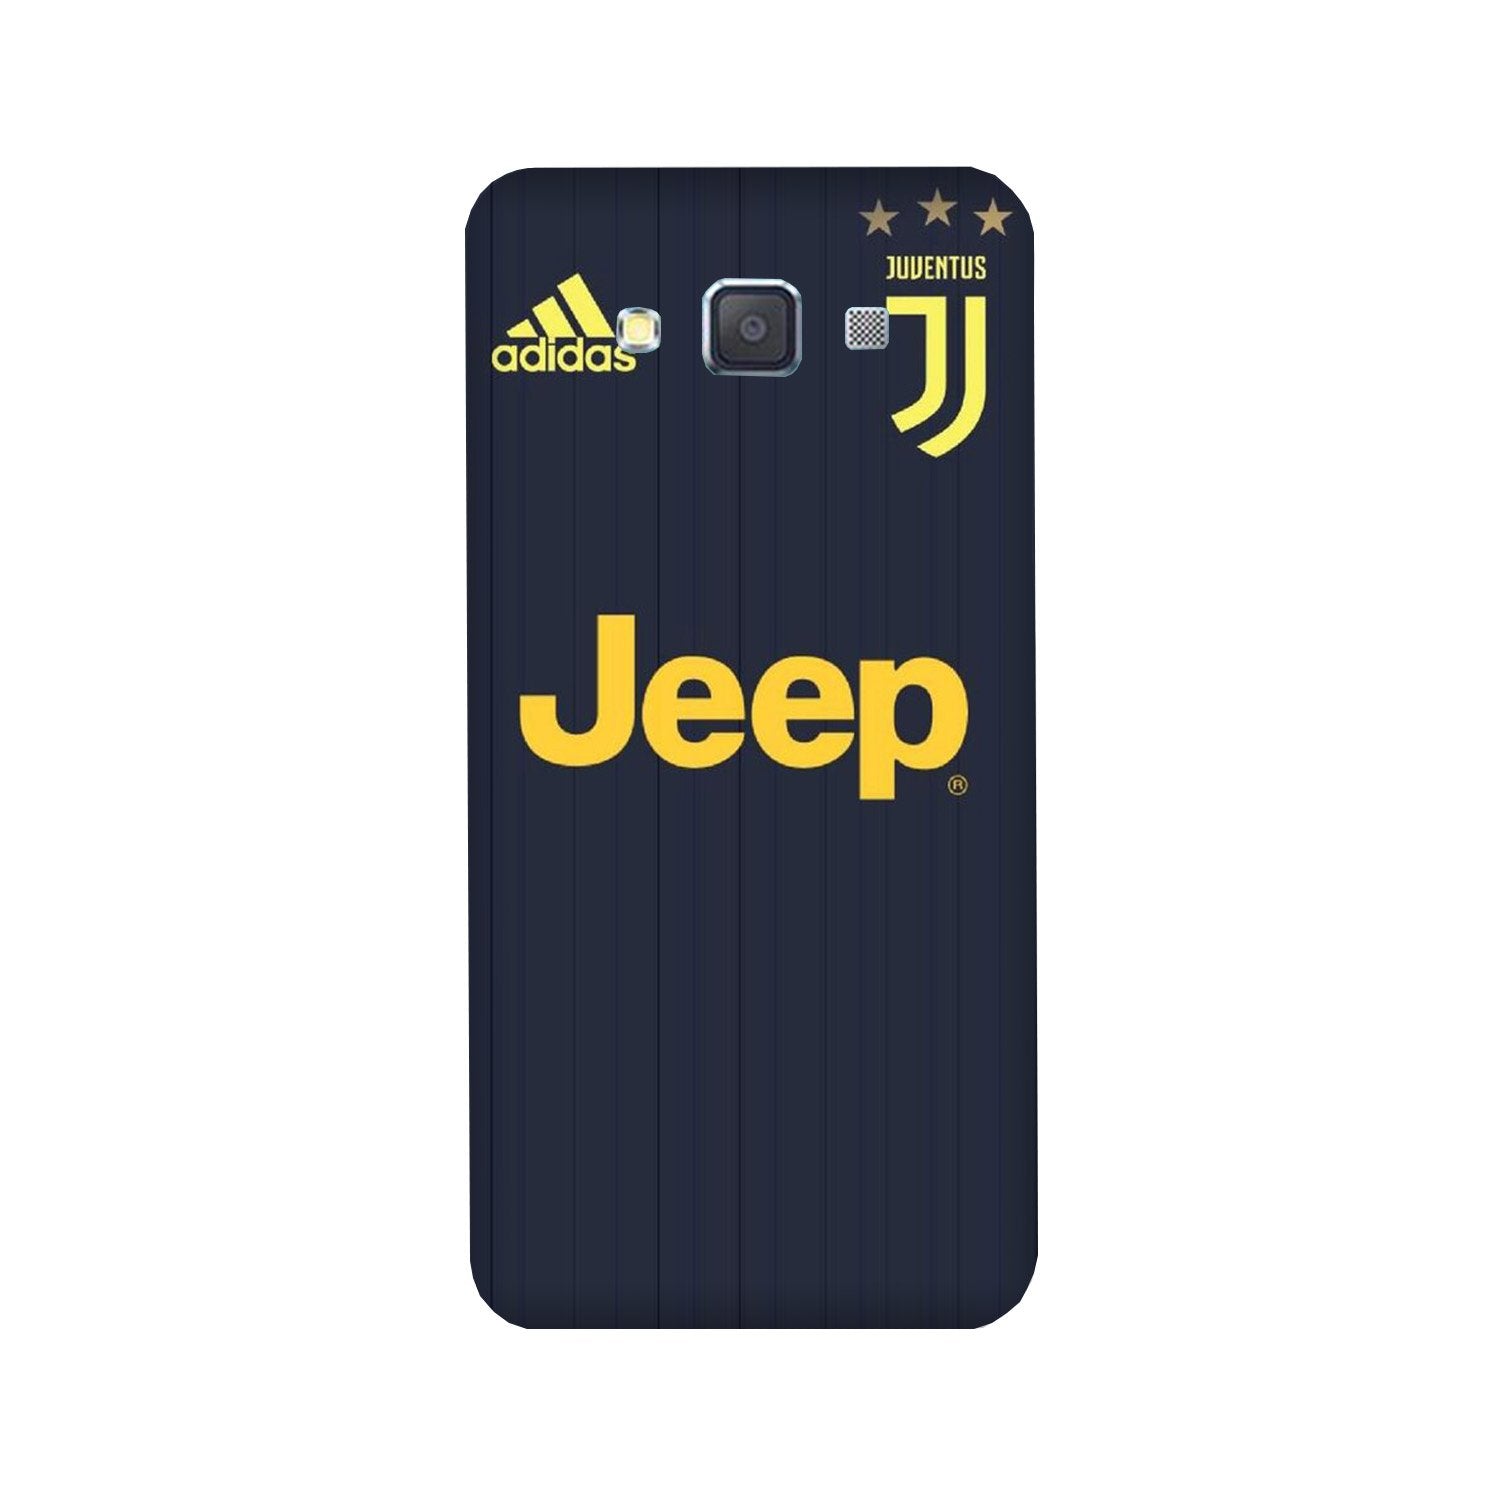 Jeep Juventus Case for Galaxy E7  (Design - 161)